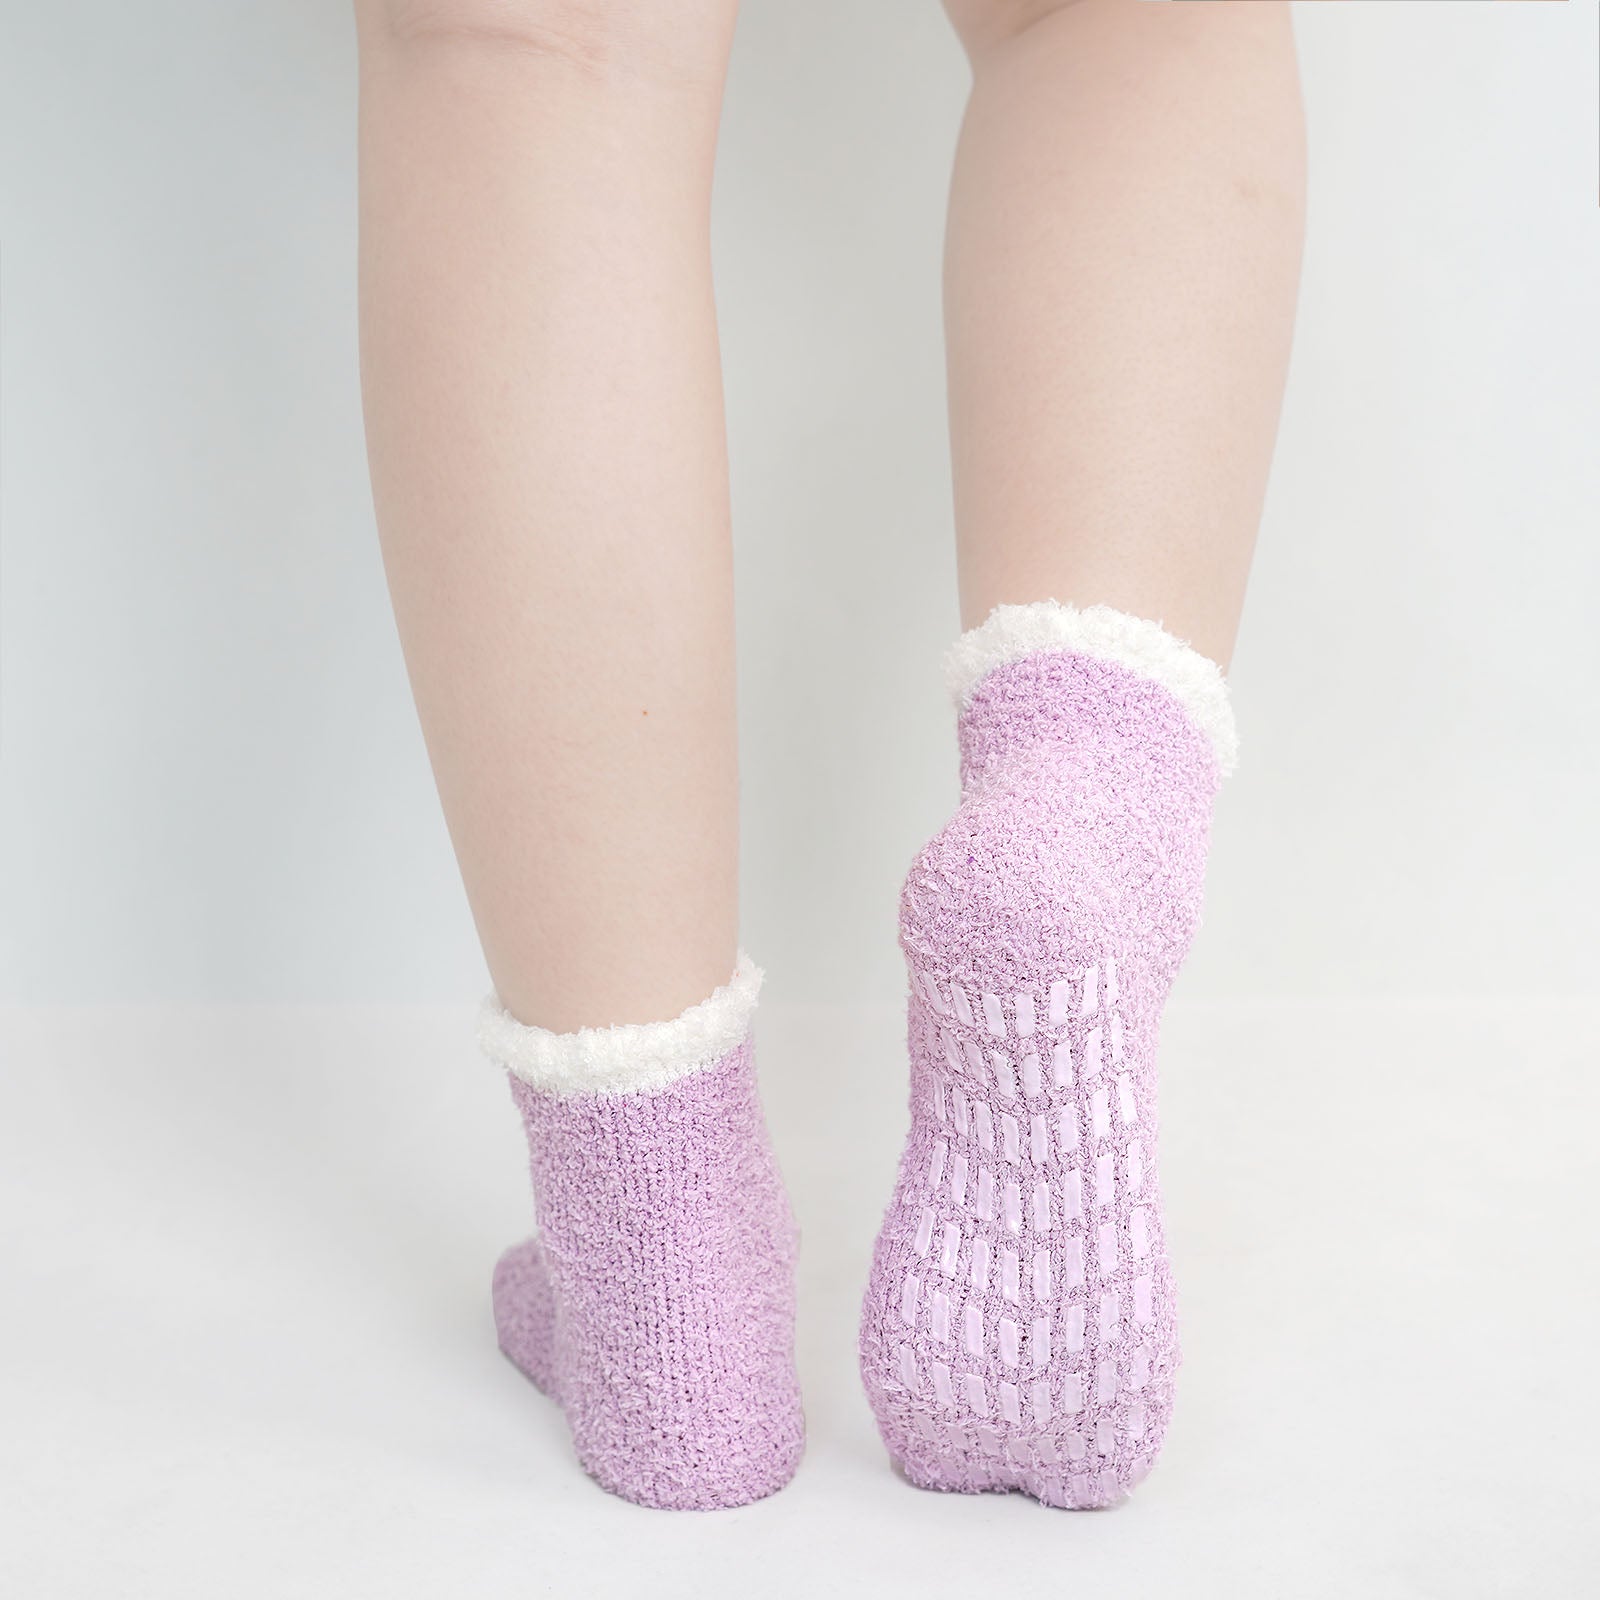 QKURT 5 Pairs of Fluffy Socks,Winter Fuzzy Bed Socks Cosy Sleep Socks Thick  Winter Slipper Socks for Girls Women